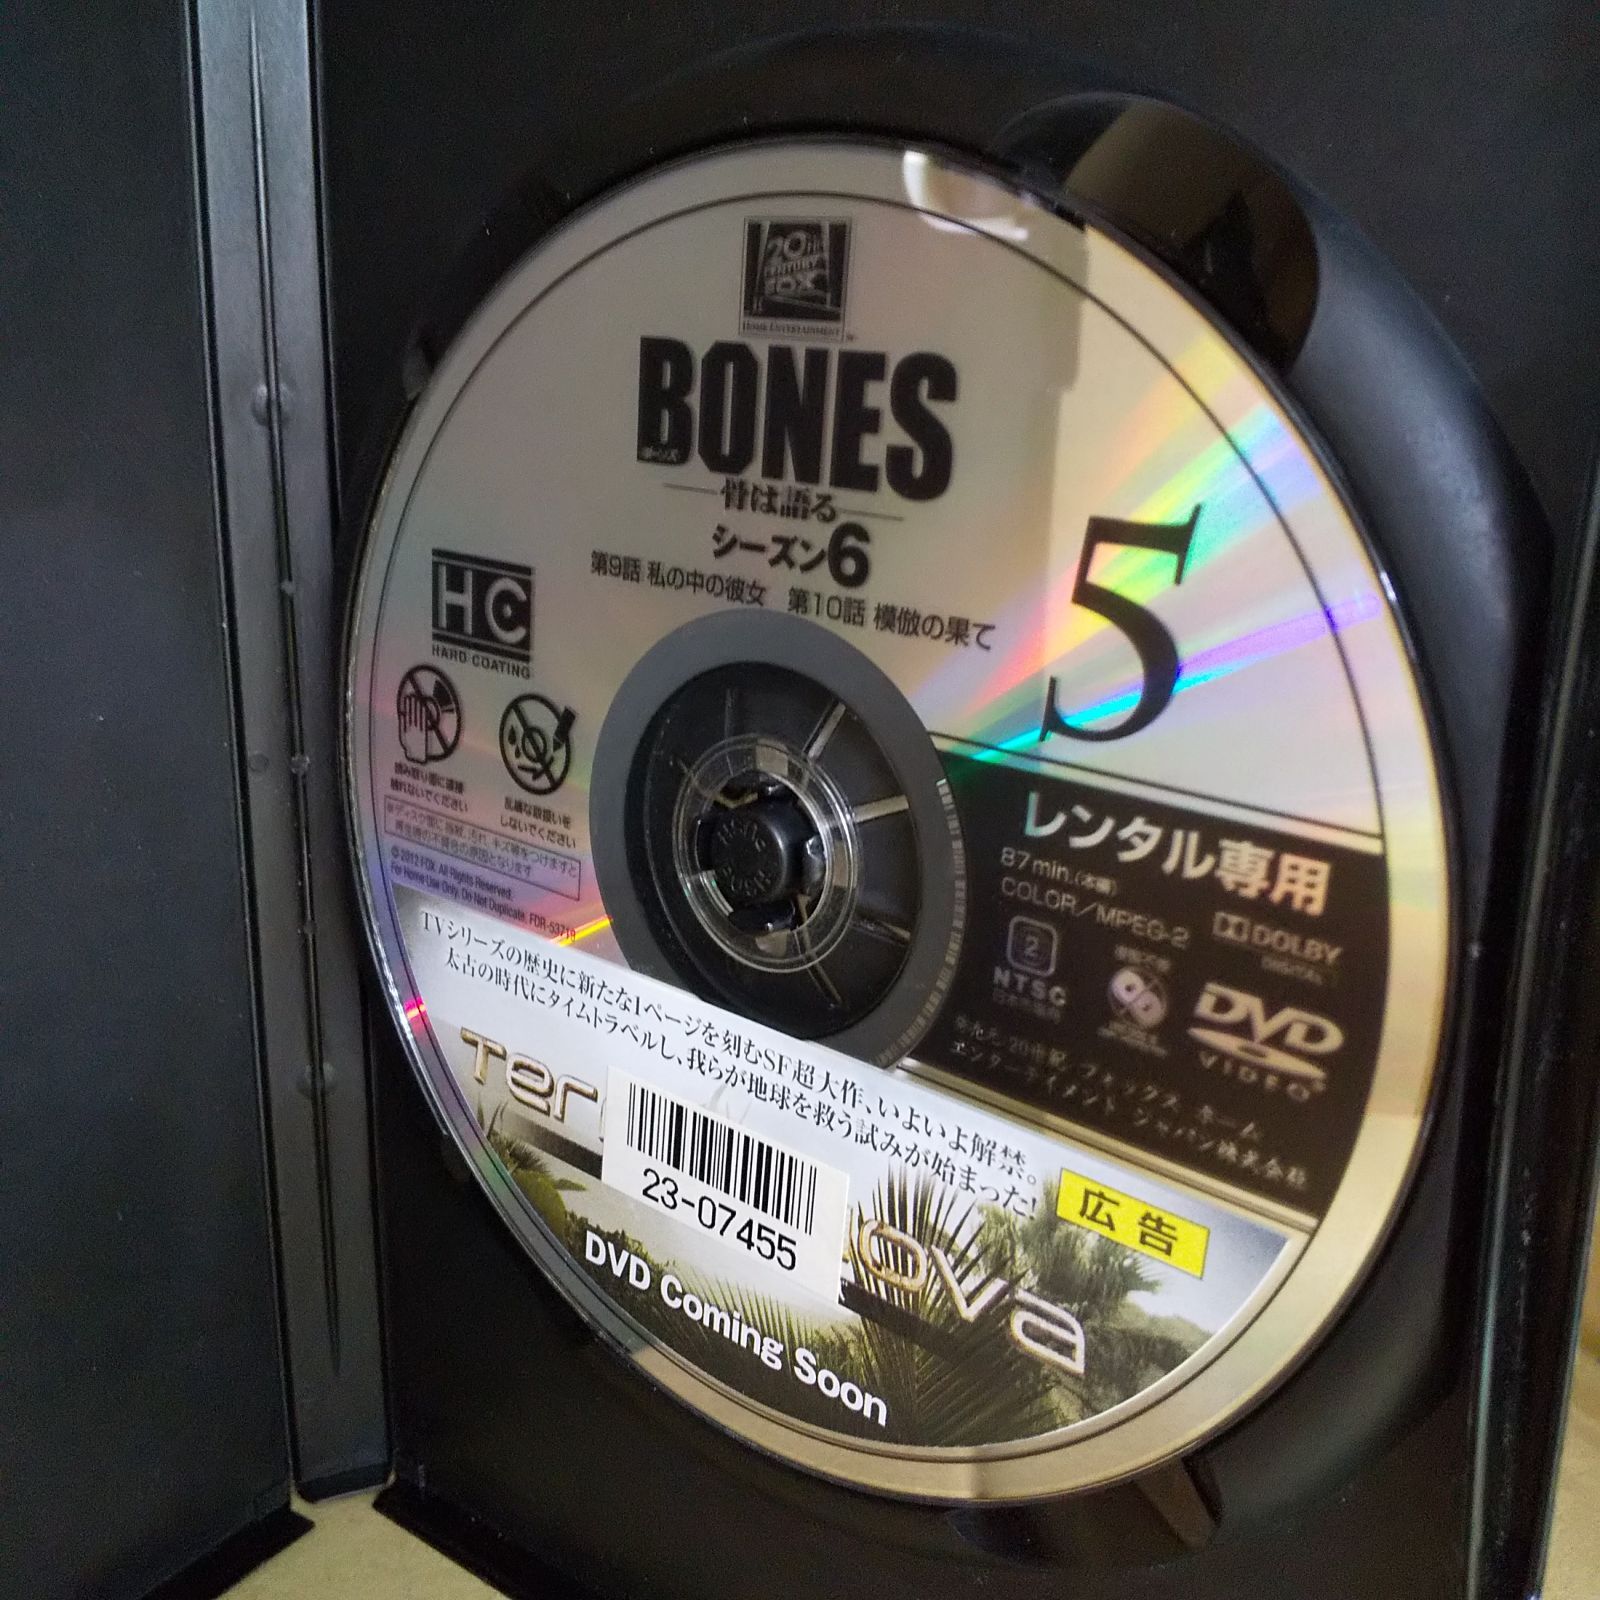 BONES ボーンズ -骨は語る- シーズン6 Vol.5　レンタル専用　中古　DVD　ケース付き